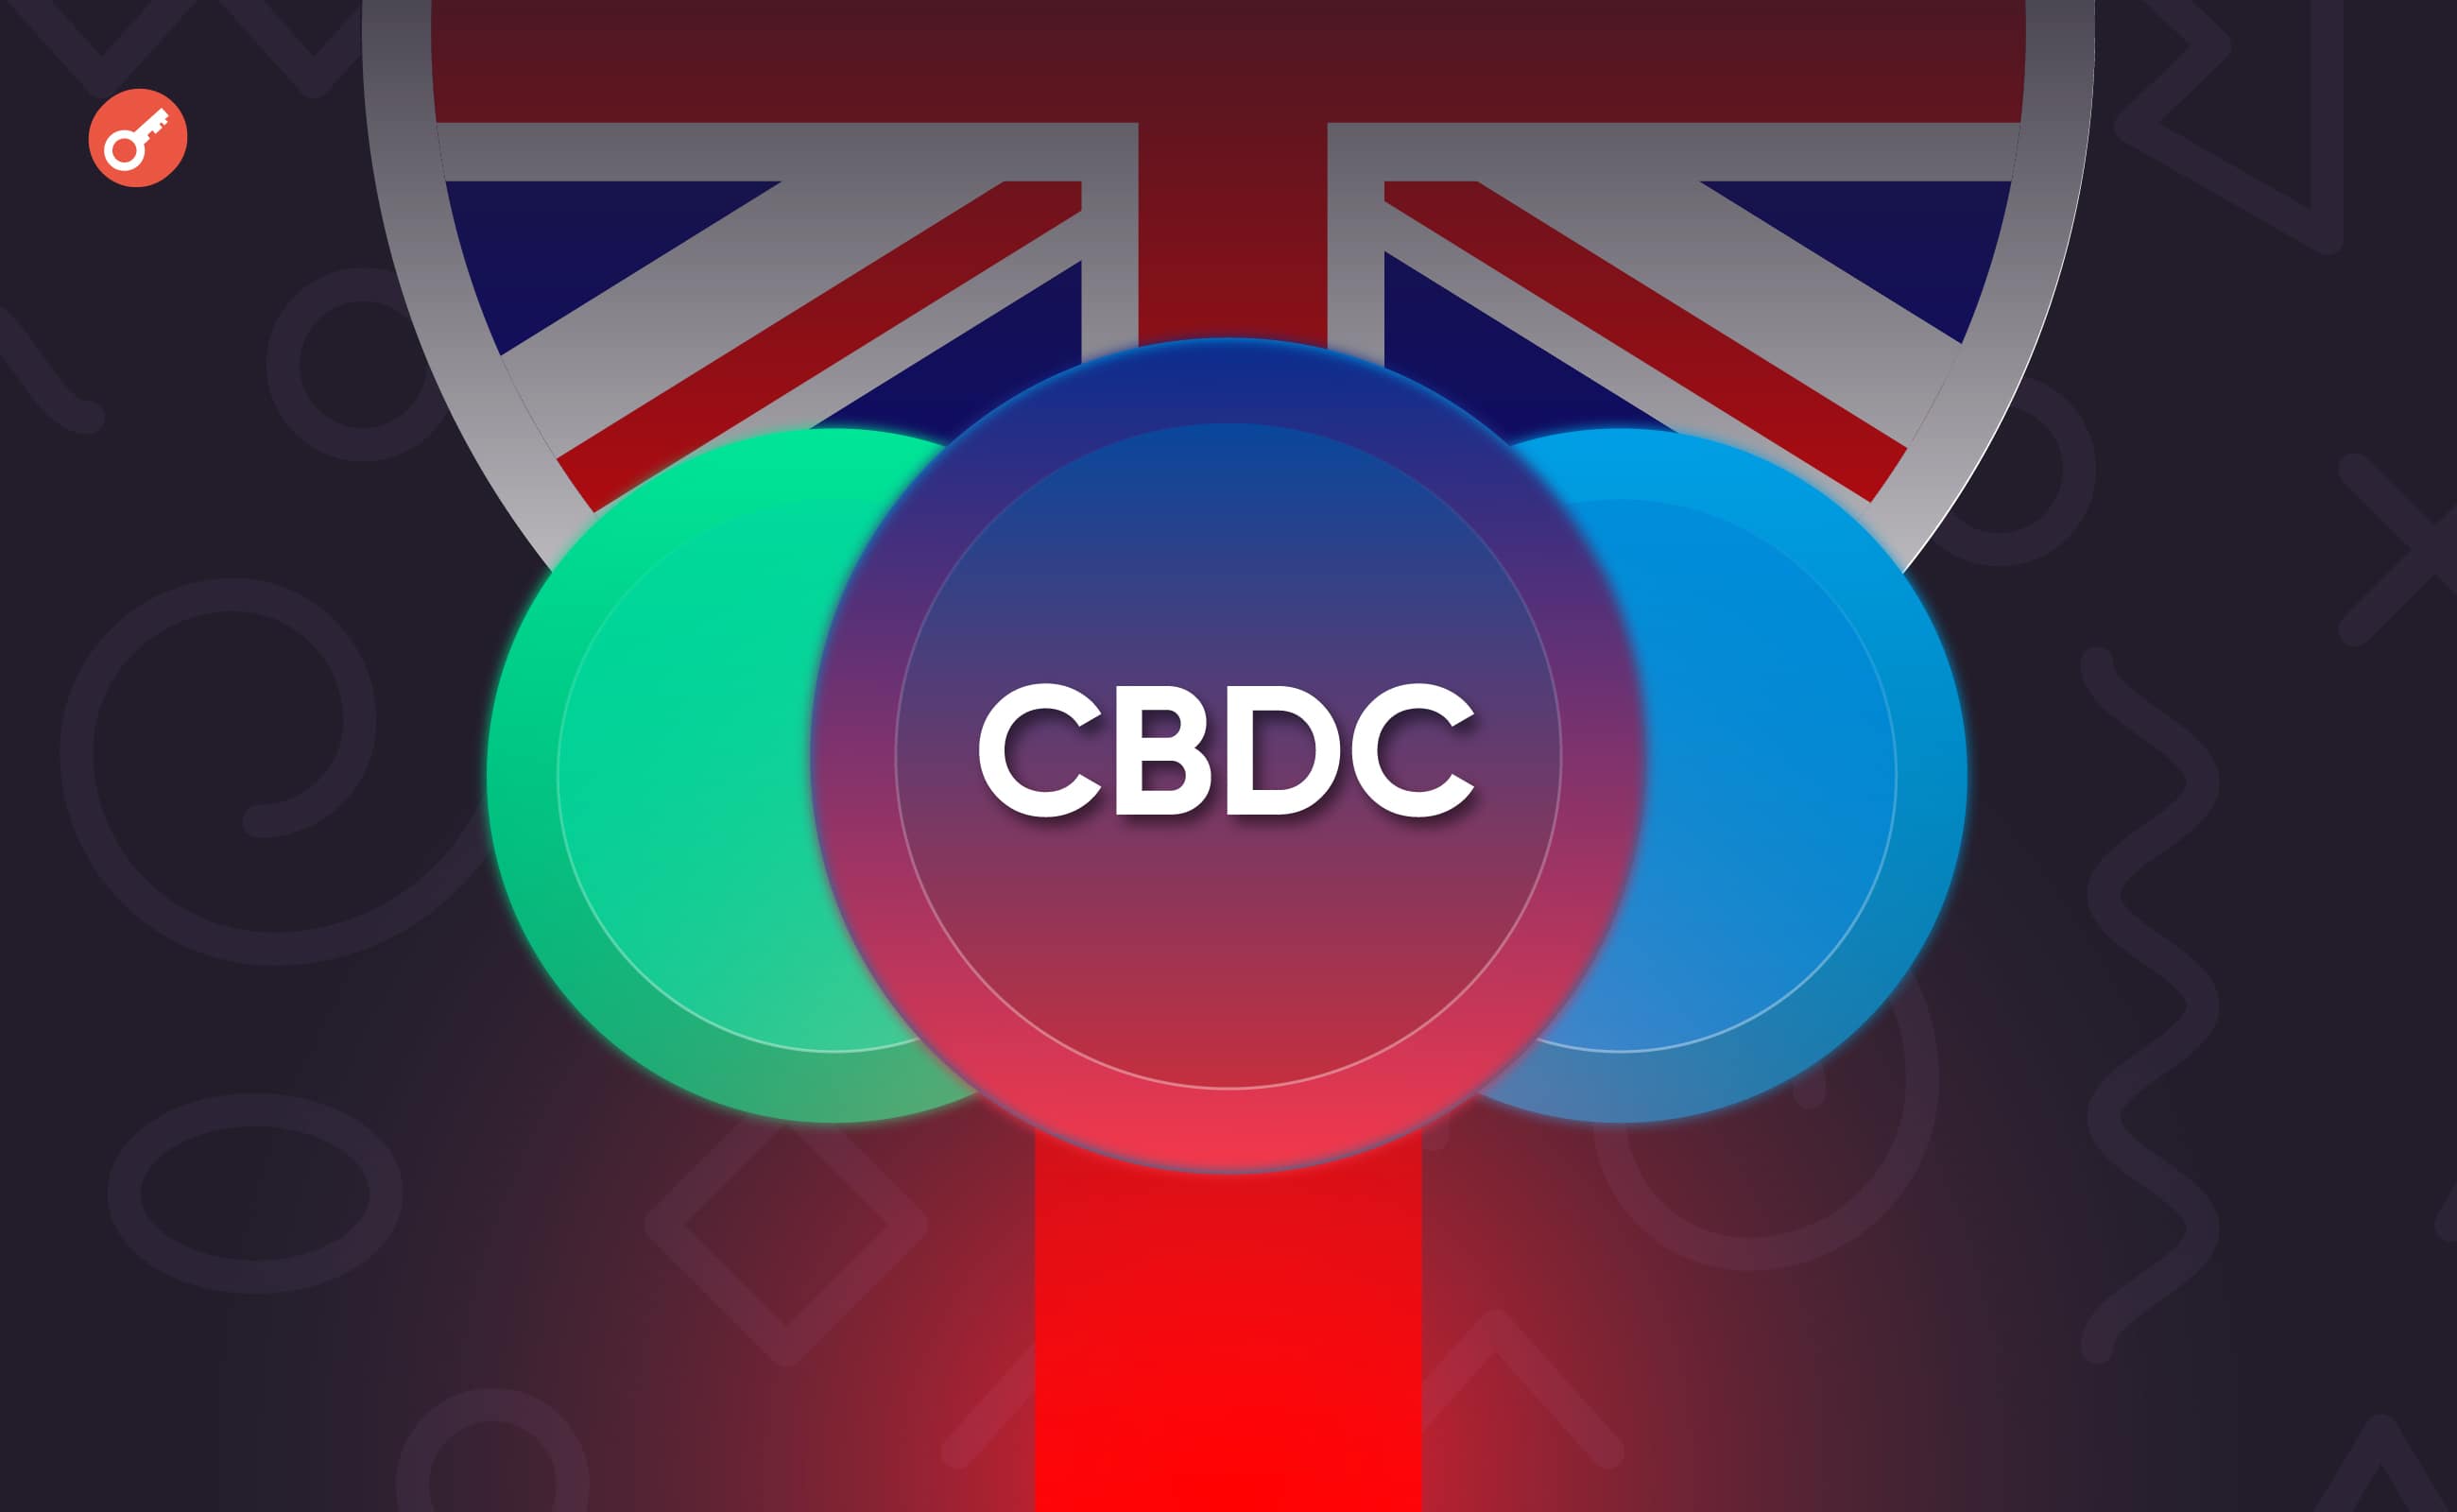 Эксперт допустил совместное использование стейблкоинов и CBDC в Великобритании. Заглавный коллаж новости.